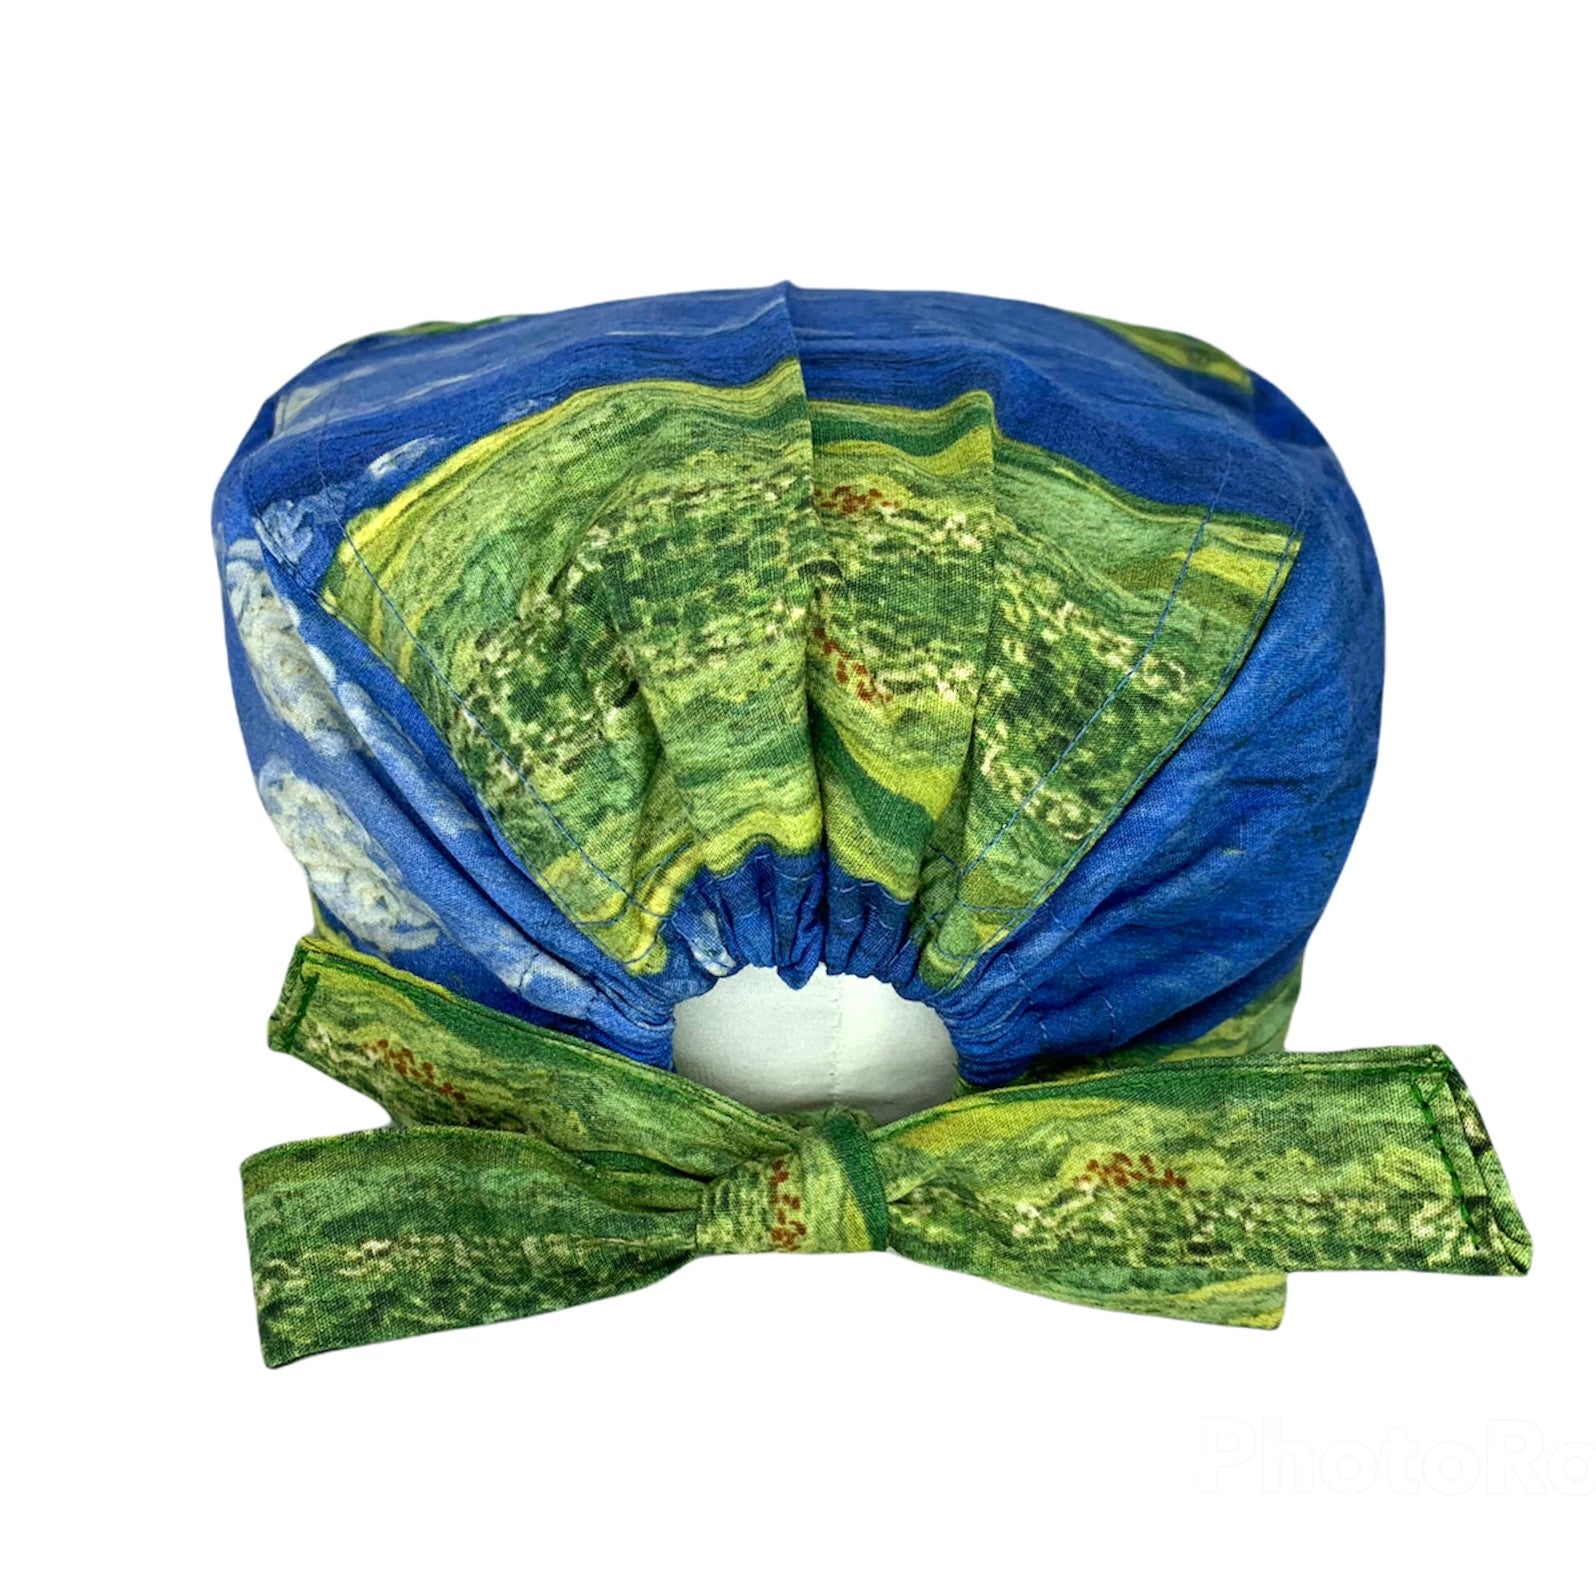 Cuffietta chirurgica ispirata al quadro di Van Gogh "Campo di grano con cielo in tempesta" che ci riporta ai colori estivi di un prato rigoglioso con la minaccia di un temporale all’orizzonte. L’alternanza di blu e verde creano un mix altamente rilassante